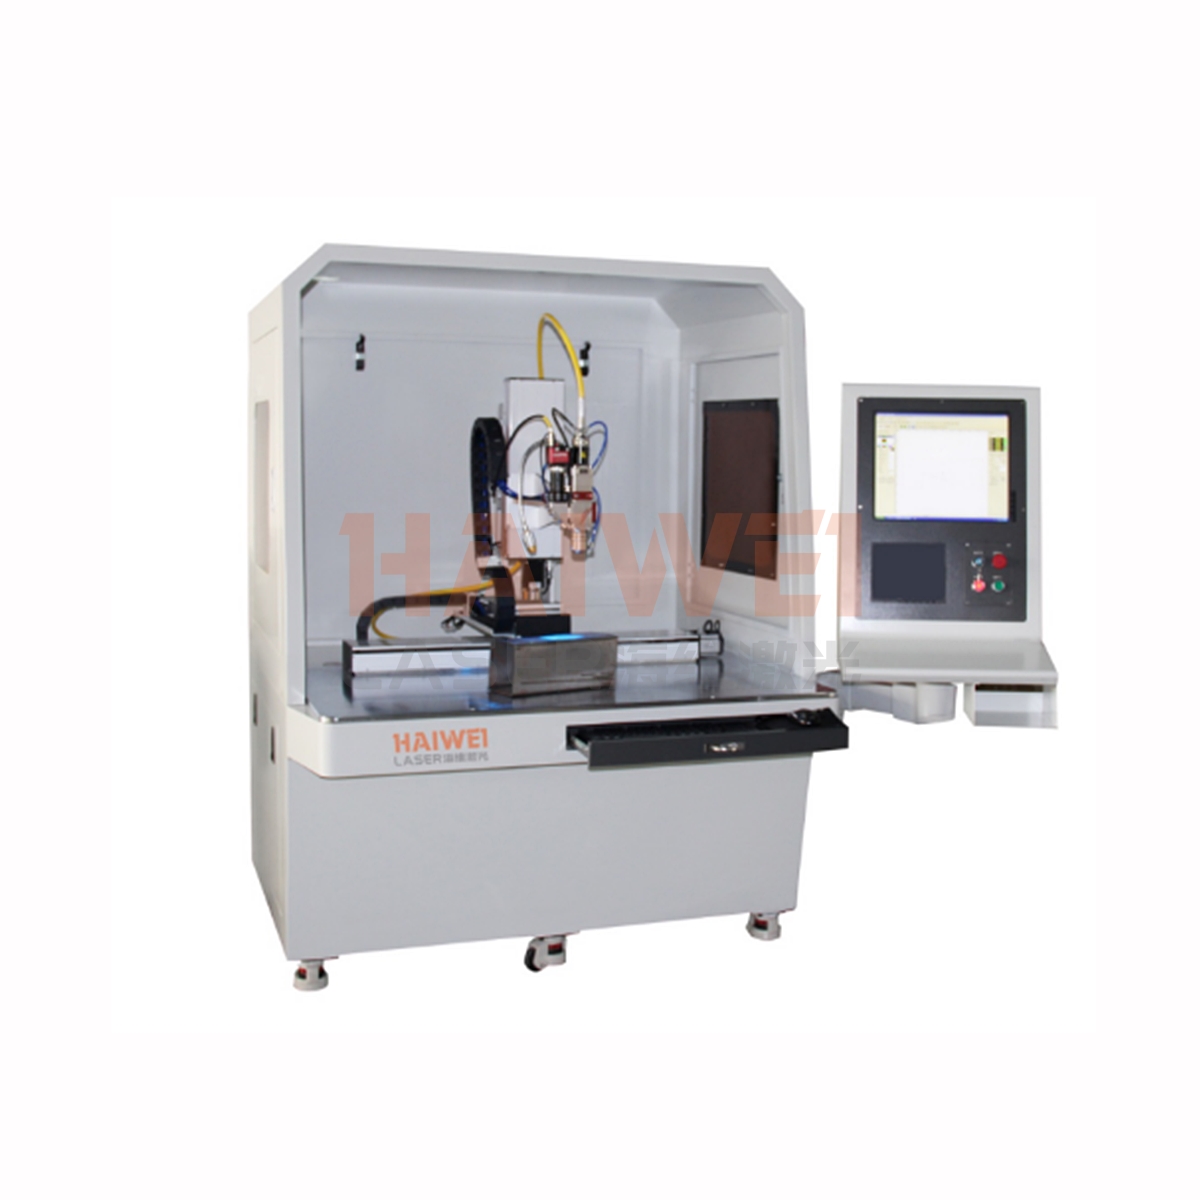 Continuous fiber laser welding machine